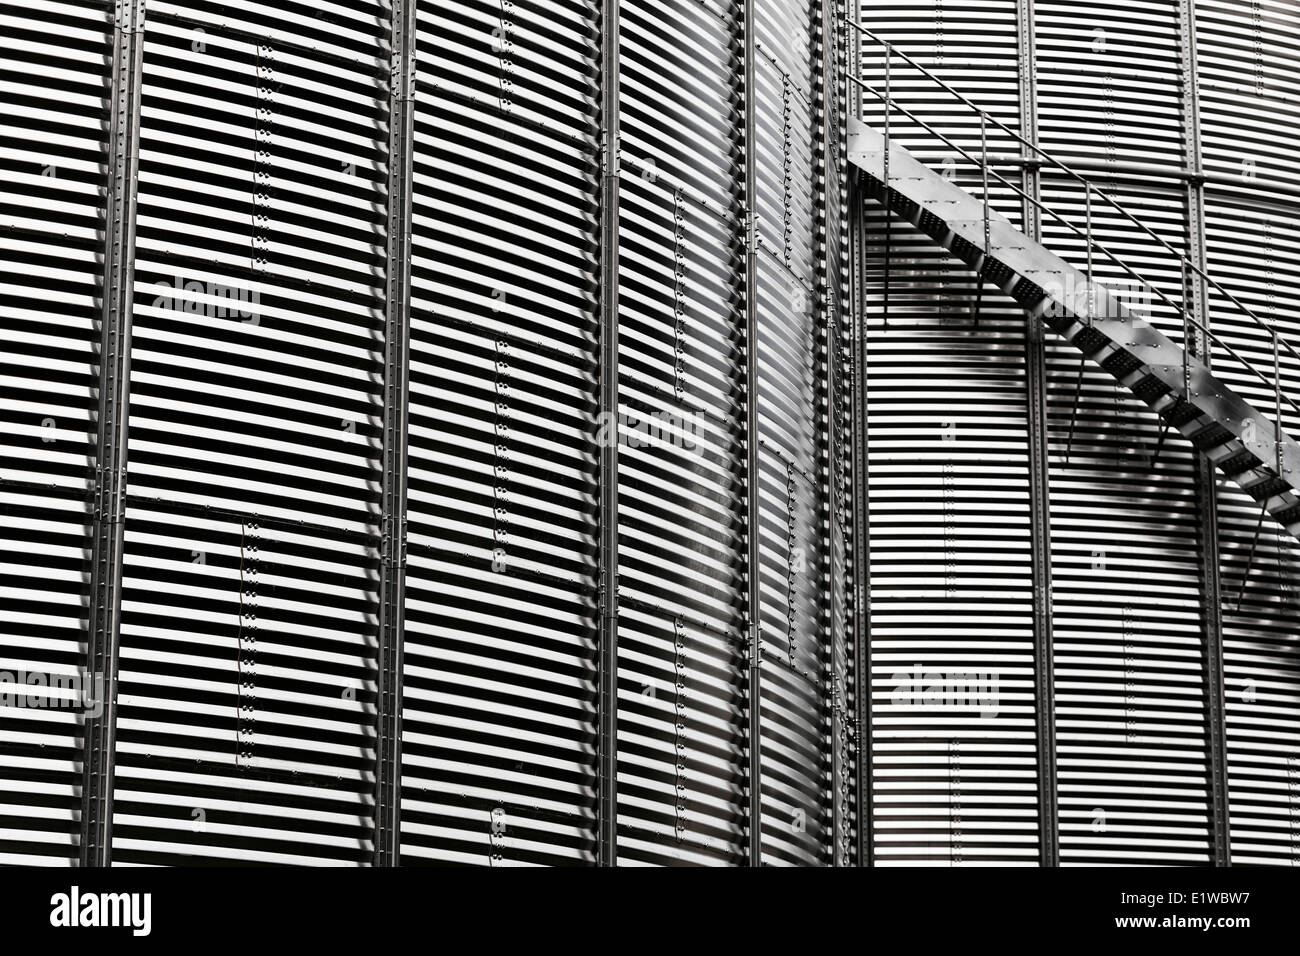 Silo de almacenamiento de metal corrugado, cerrar, Manitoba, Canadá Foto de stock